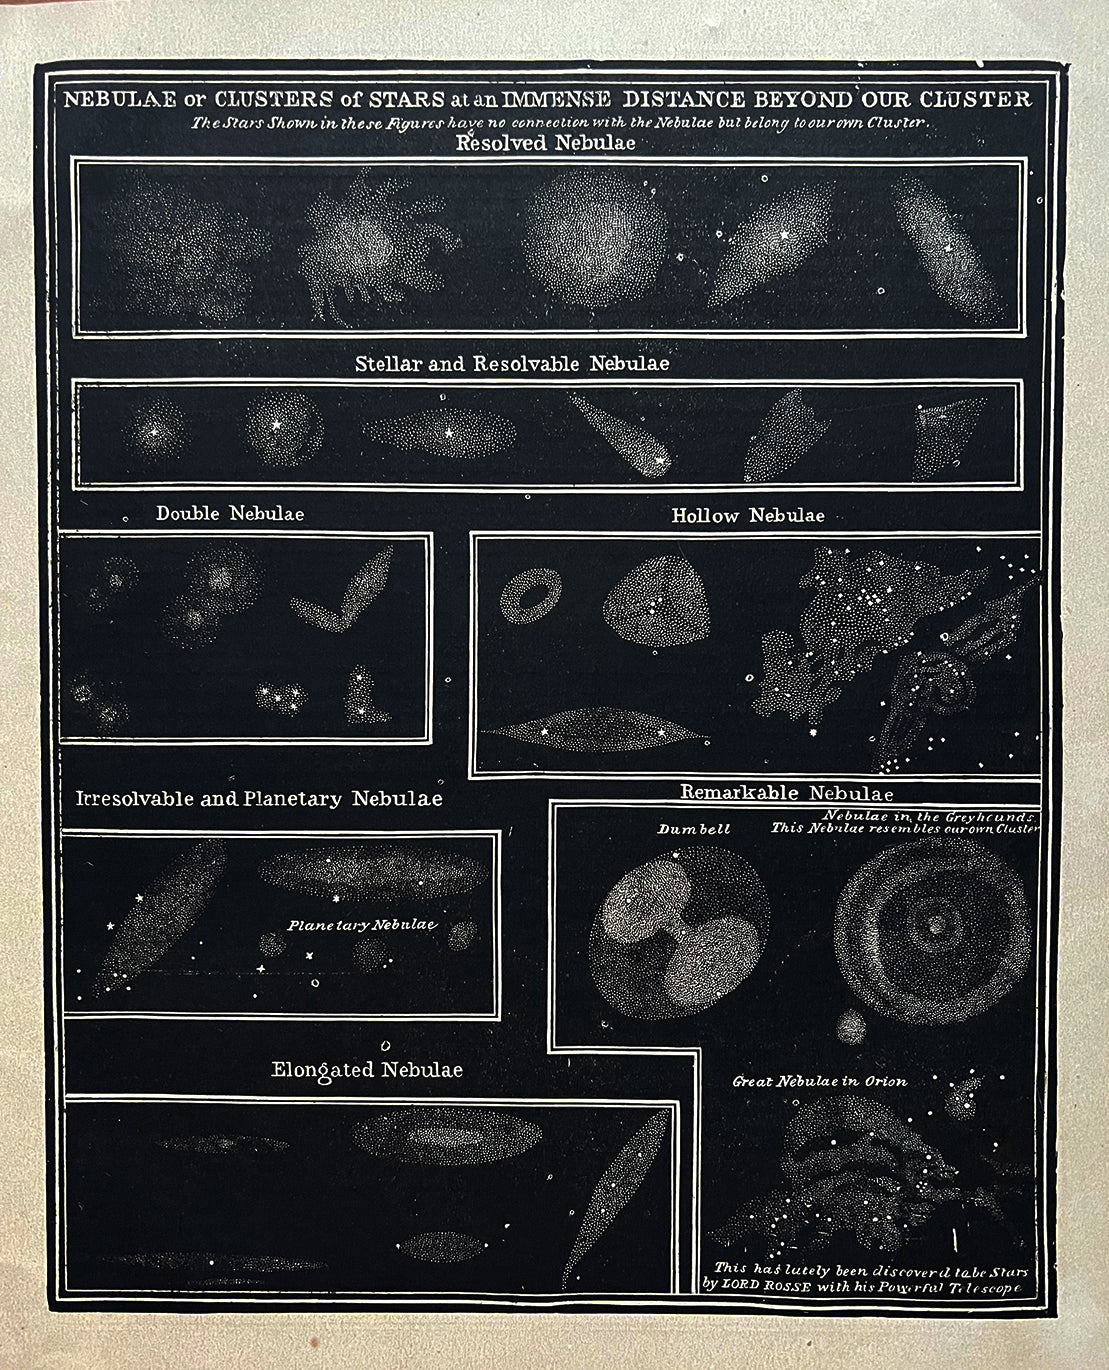 1875 Rare Antique Astronomy Block Print